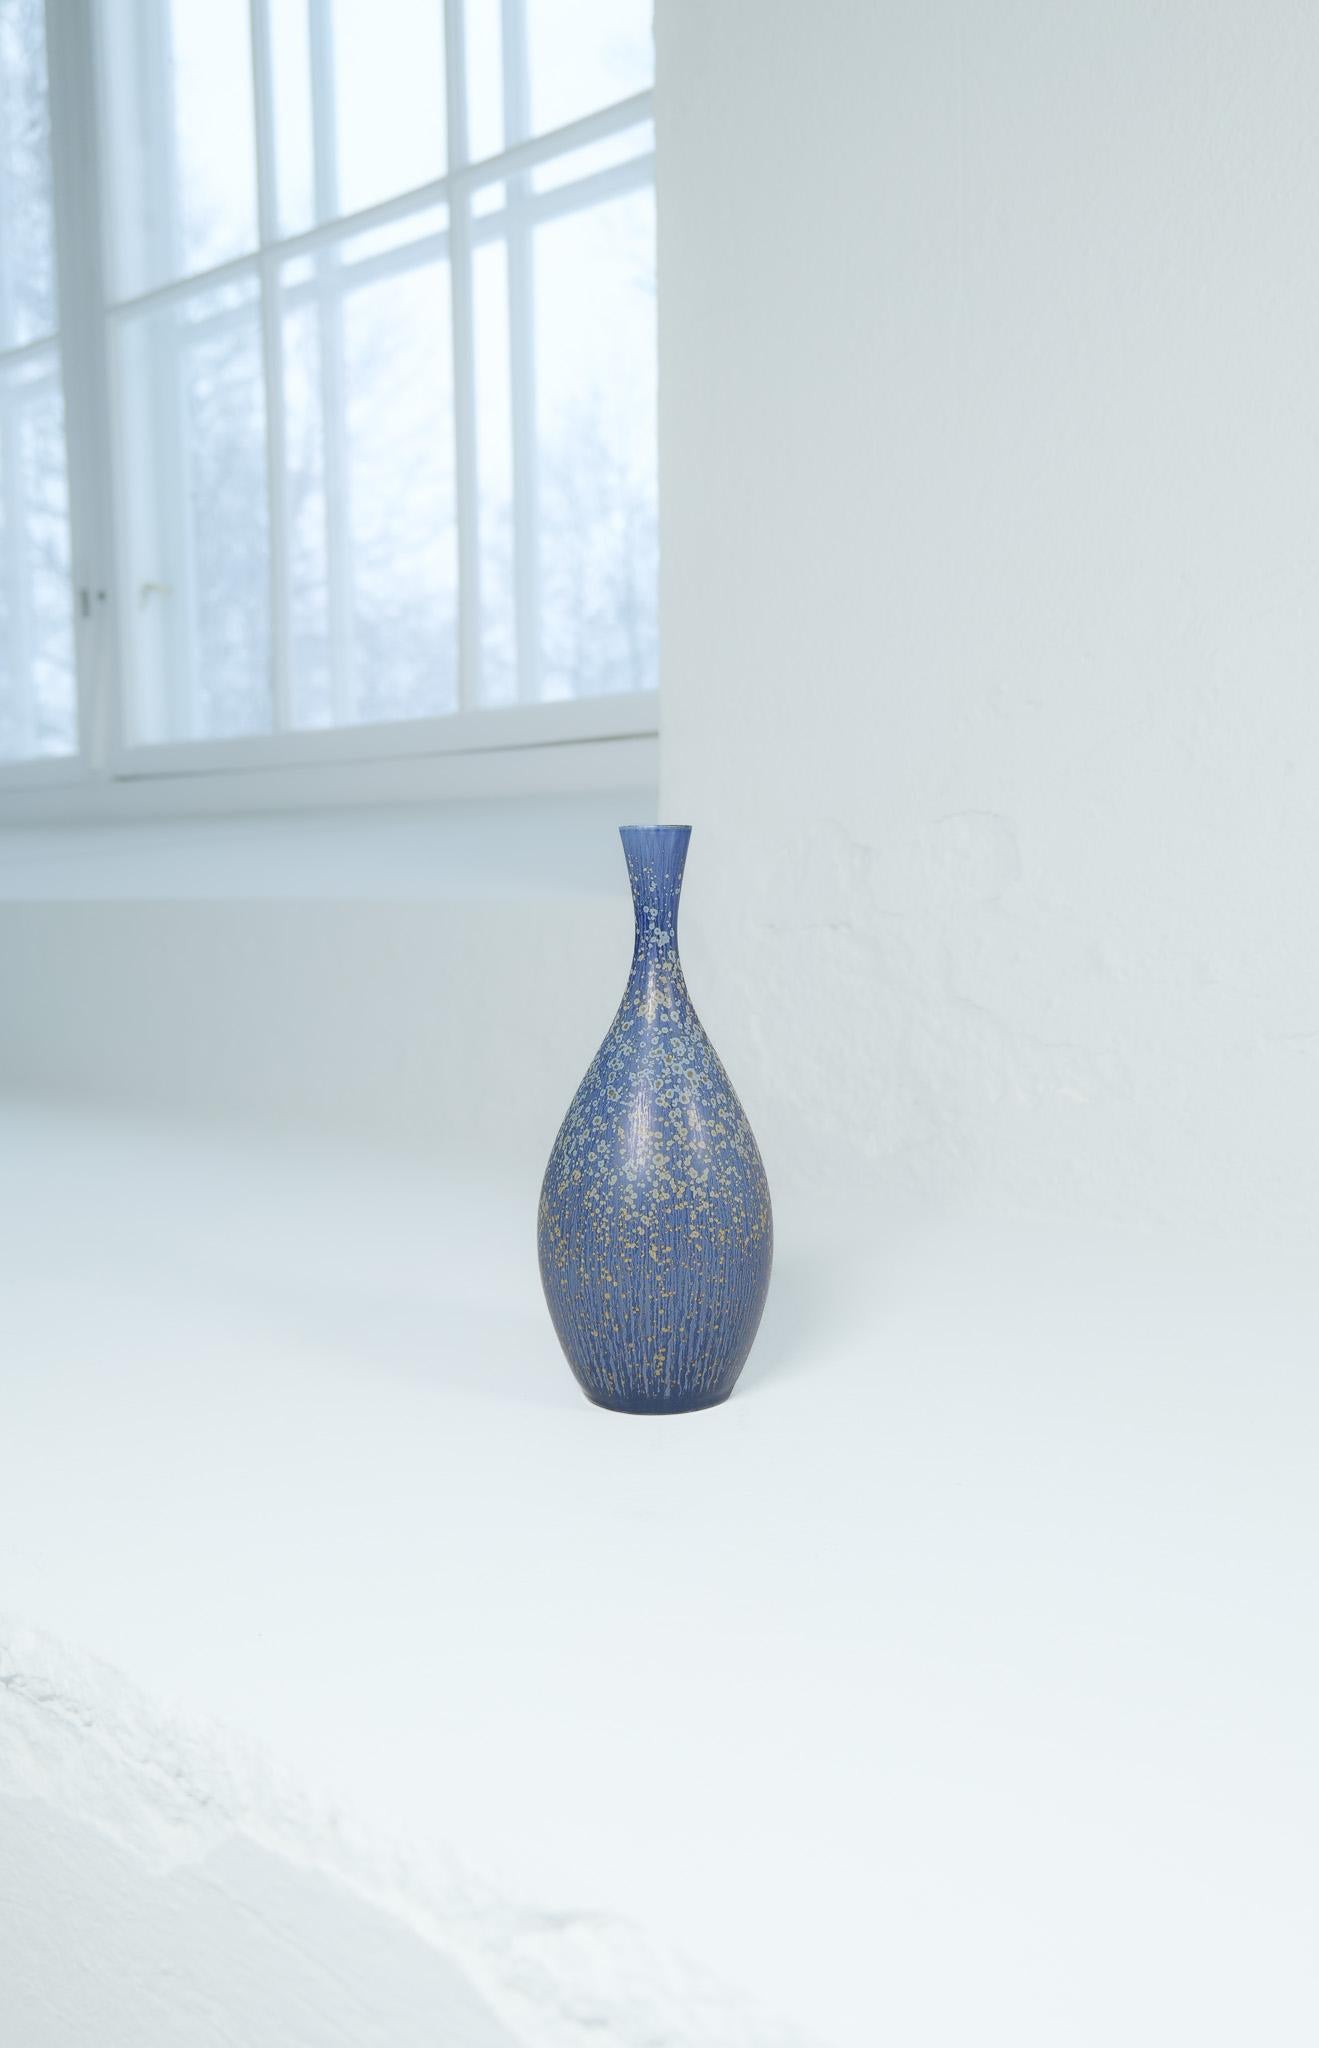 Midcentury Modern Sculptural Stoneware Vase Carl Harry Stålhane, Sweden, 1950s For Sale 4